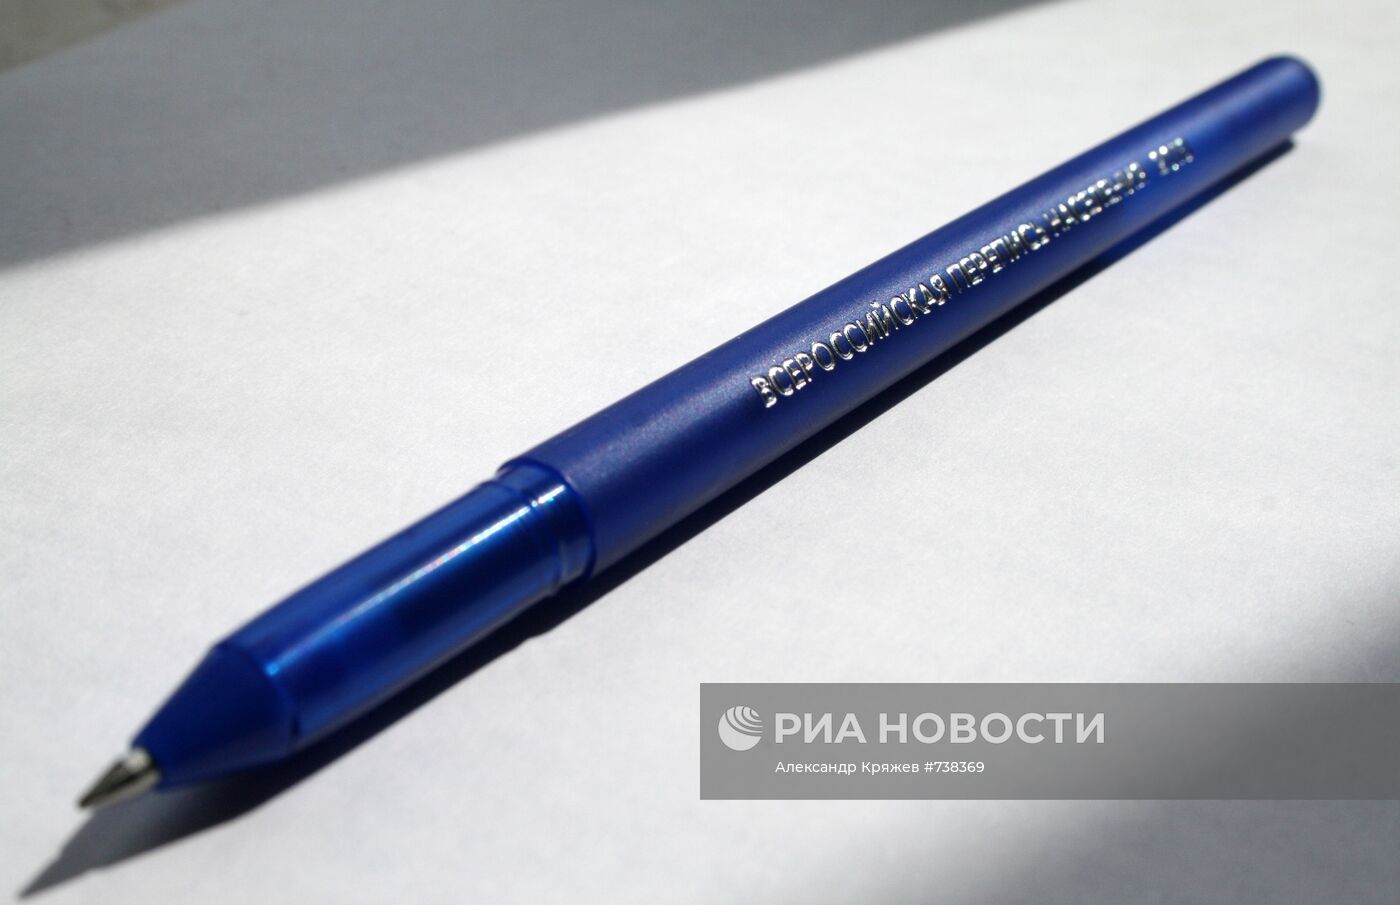 Ручка переписчика во Всероссийской переписи населения 2010